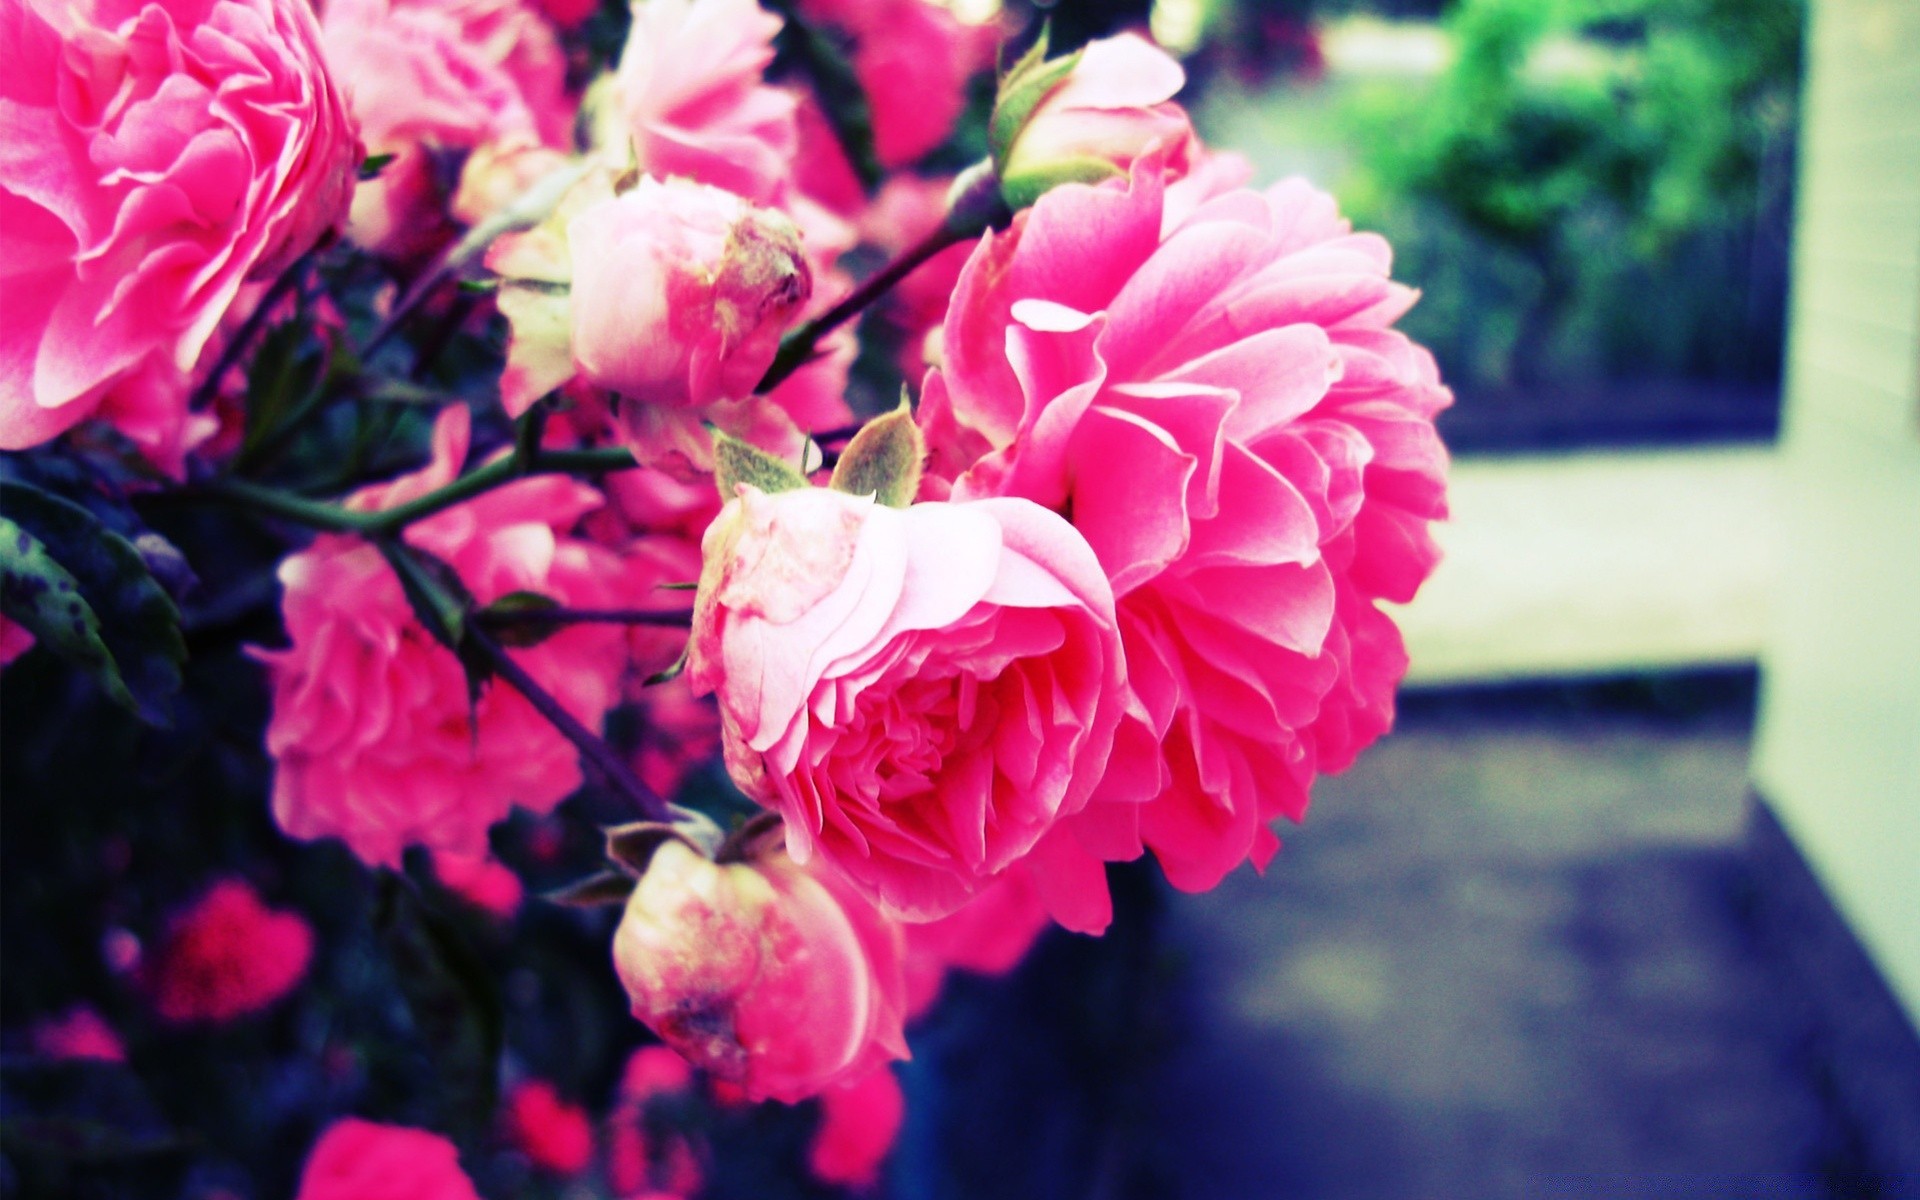 Hoa hồng là biểu tượng của tình yêu và sự kiêu sa. Những bông hoa đầy cánh kỳ diệu sẽ khiến bạn thăng hoa trong tình yêu và cảm nhận được một ngày tràn đầy năng lượng. Ảnh liên quan đến hoa hồng sẽ mang đến sự trang trí và tươi vui cho màn hình điện thoại của bạn.